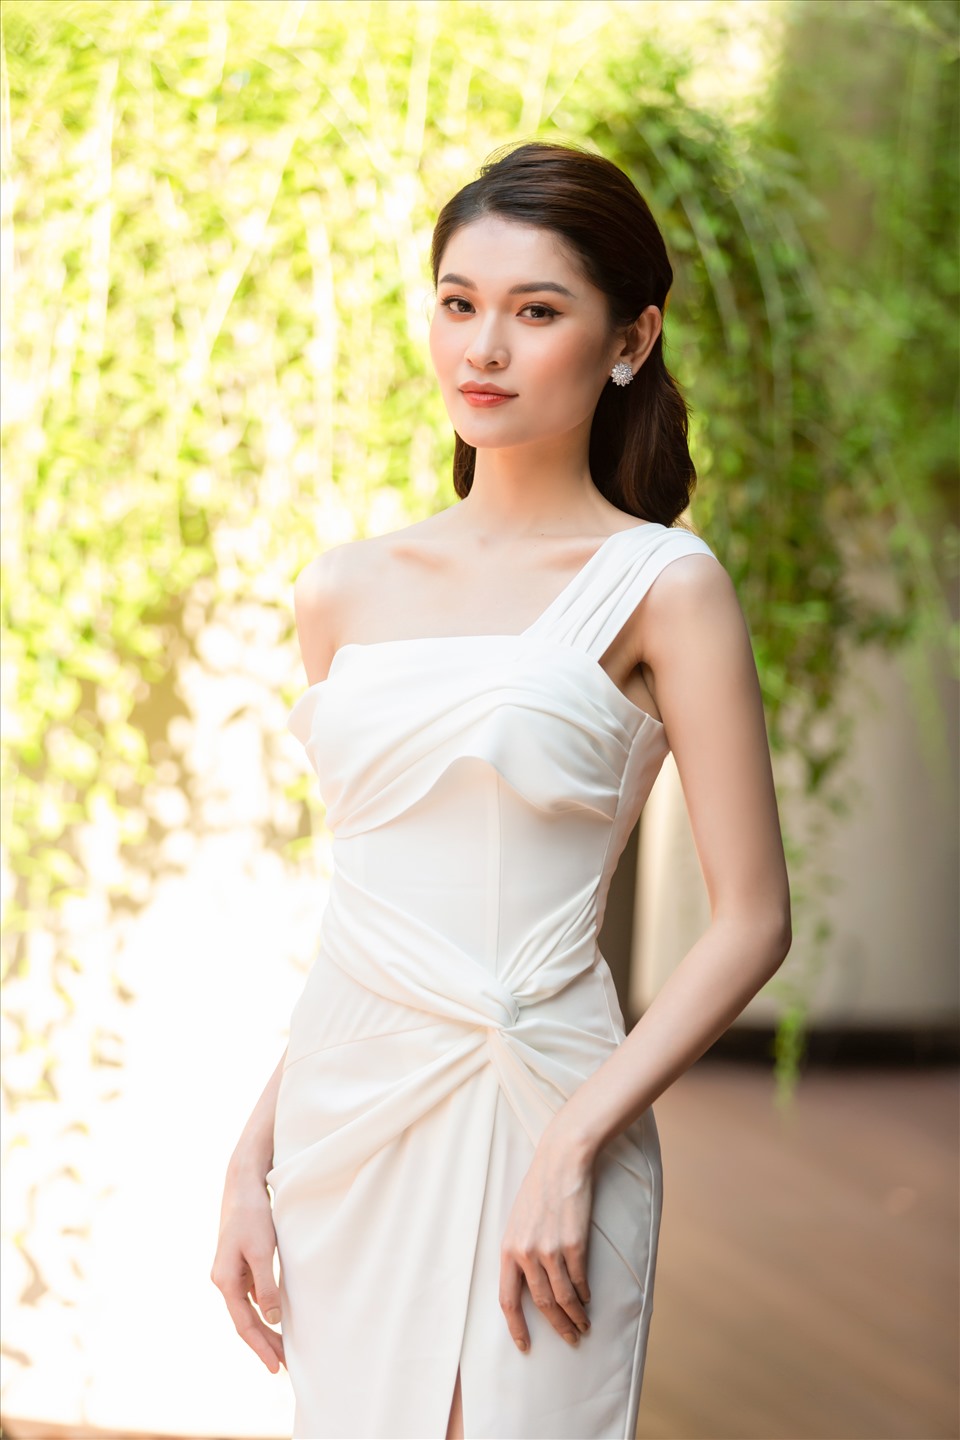 Tại sự kiện, Thùy Dung có dịp hội ngộ ca sĩ Minh Hằng, hoa hậu Ngọc Hân, Người đẹp Thể thao HHVN 2020 Phù Bảo Nghi (váy xanh).